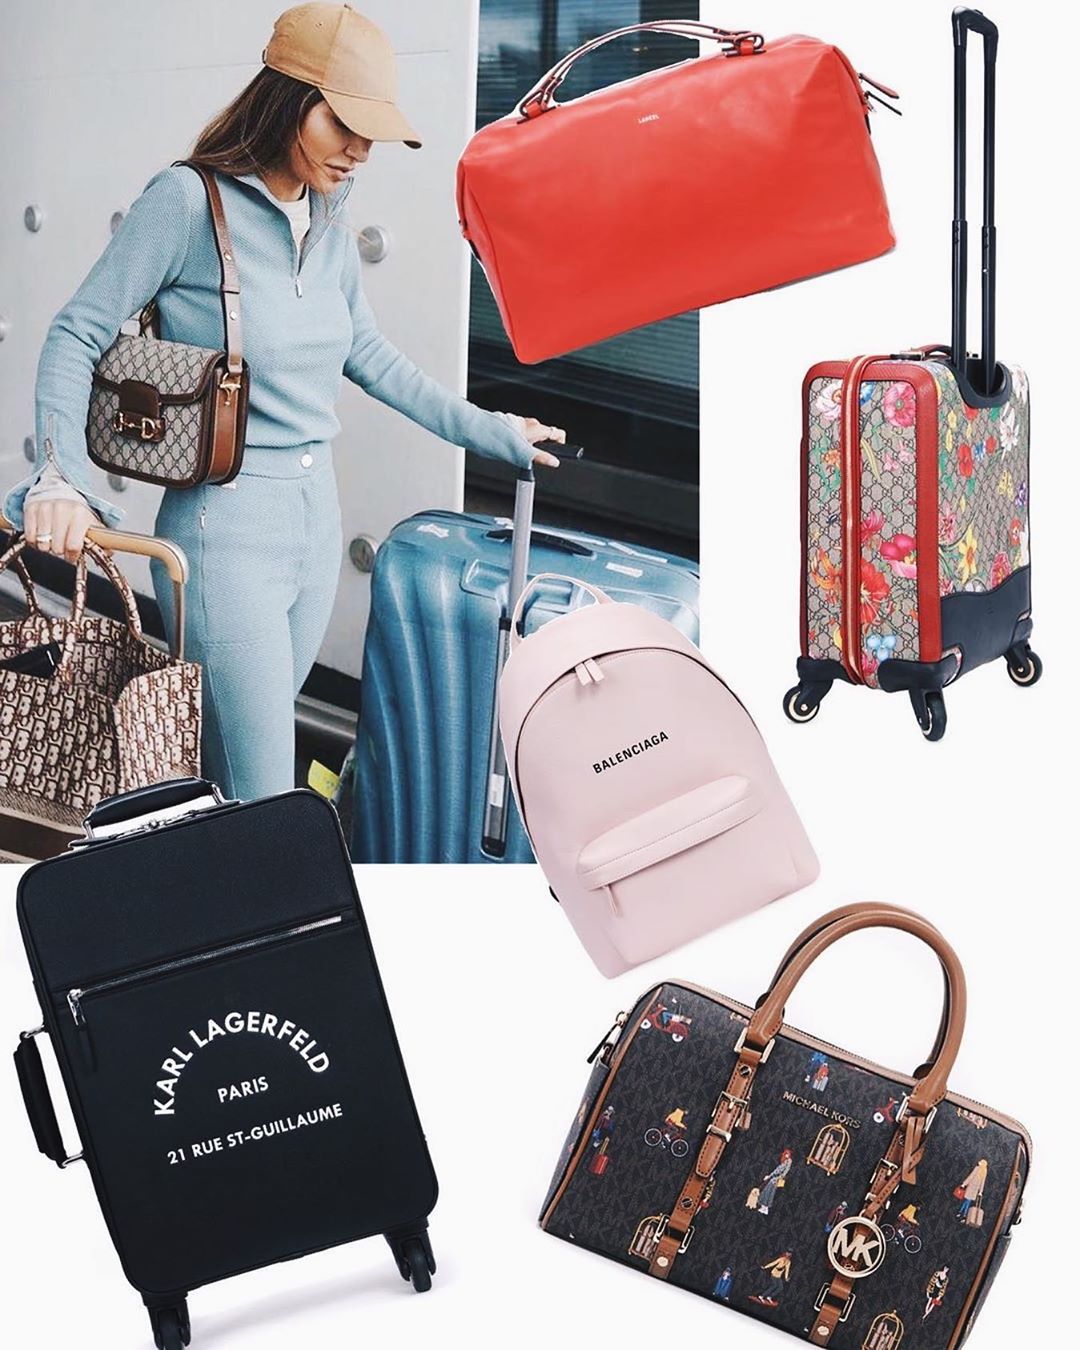 VIPAVENUE - Для тех, кто планирует в отпуск или просто любит путешествия. #VipAvenue собрал для Вас находки с просторов
нашего интернет-магазина с #sale30. 🔥
⠀
Красная сумка #Lancel
Цветочный чемодан...